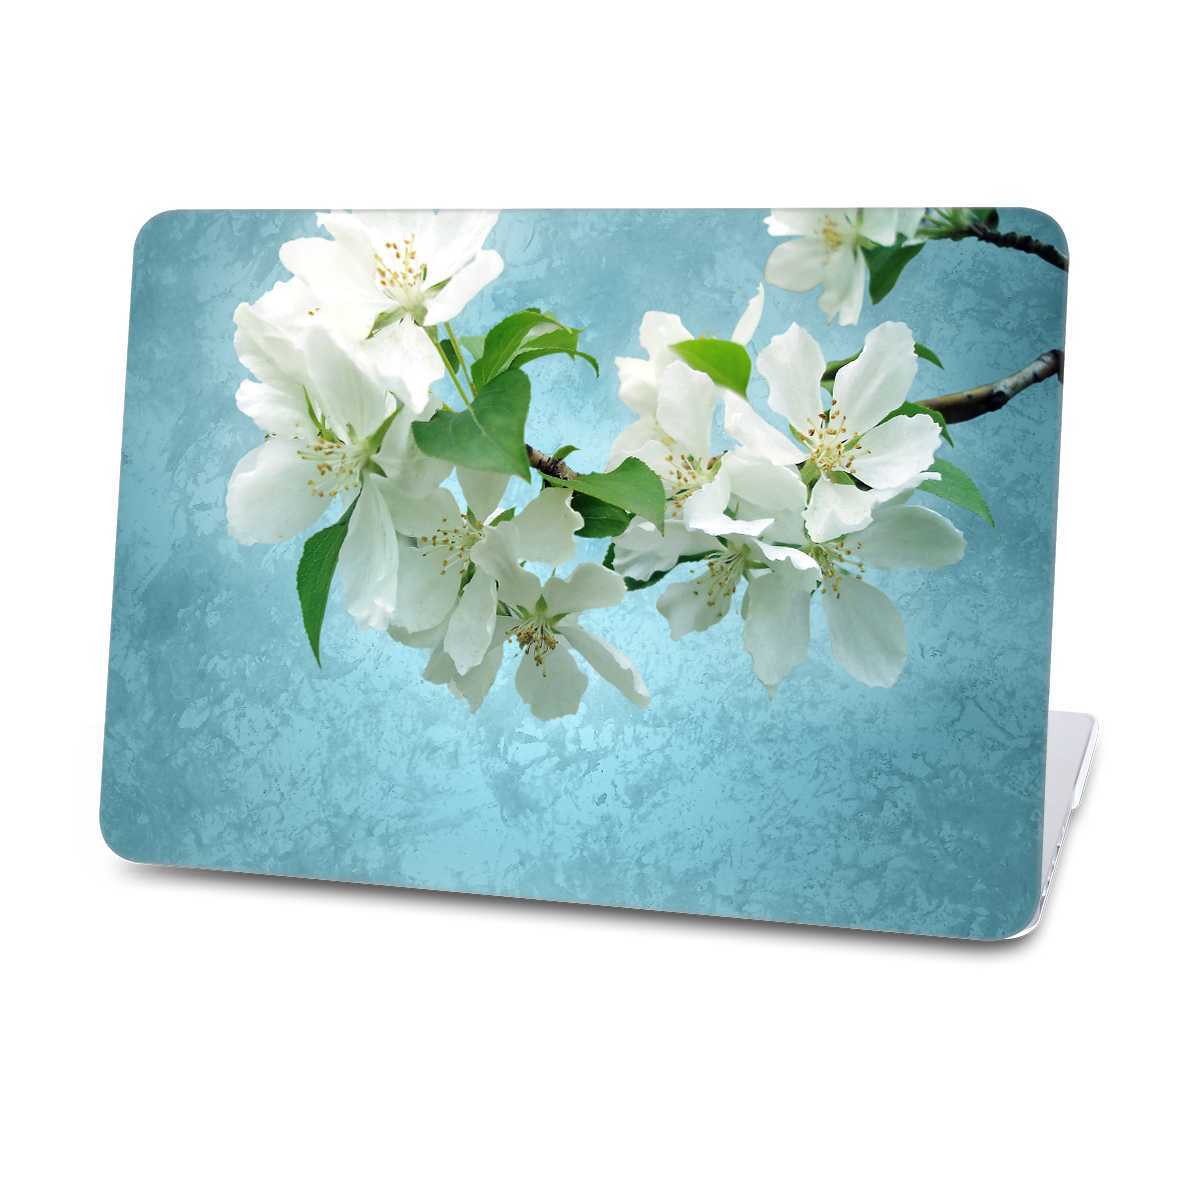 flower macbook case